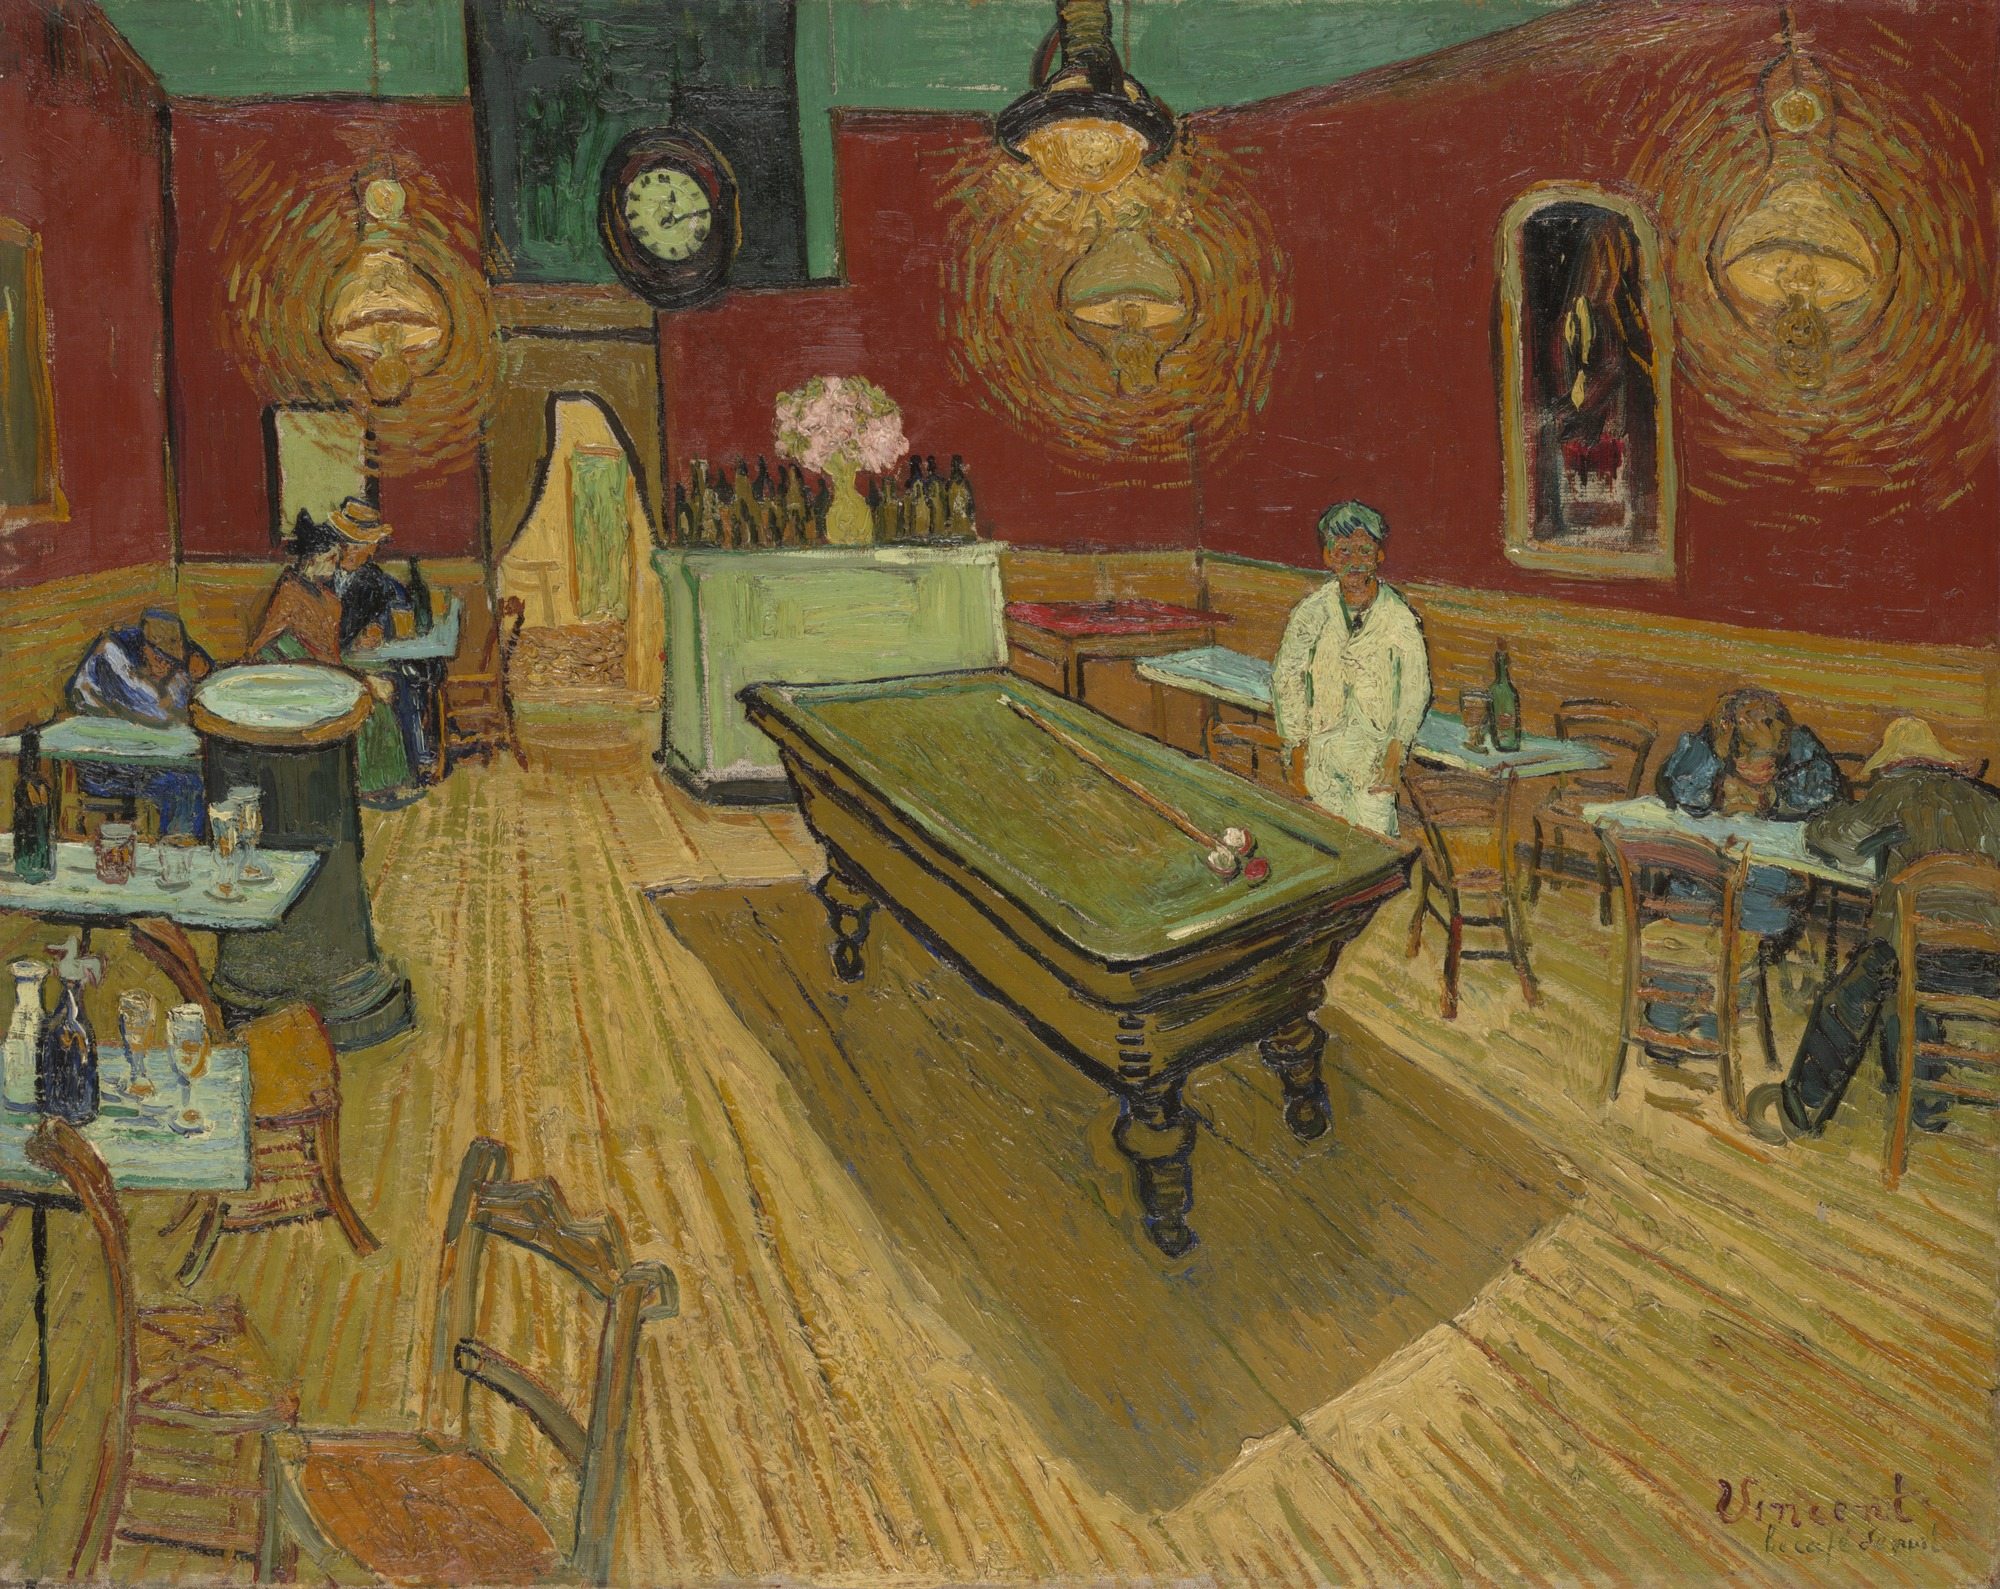 Il caffè di notte by Vincent van Gogh - 1888 - 72.4 × 92.1 cm 